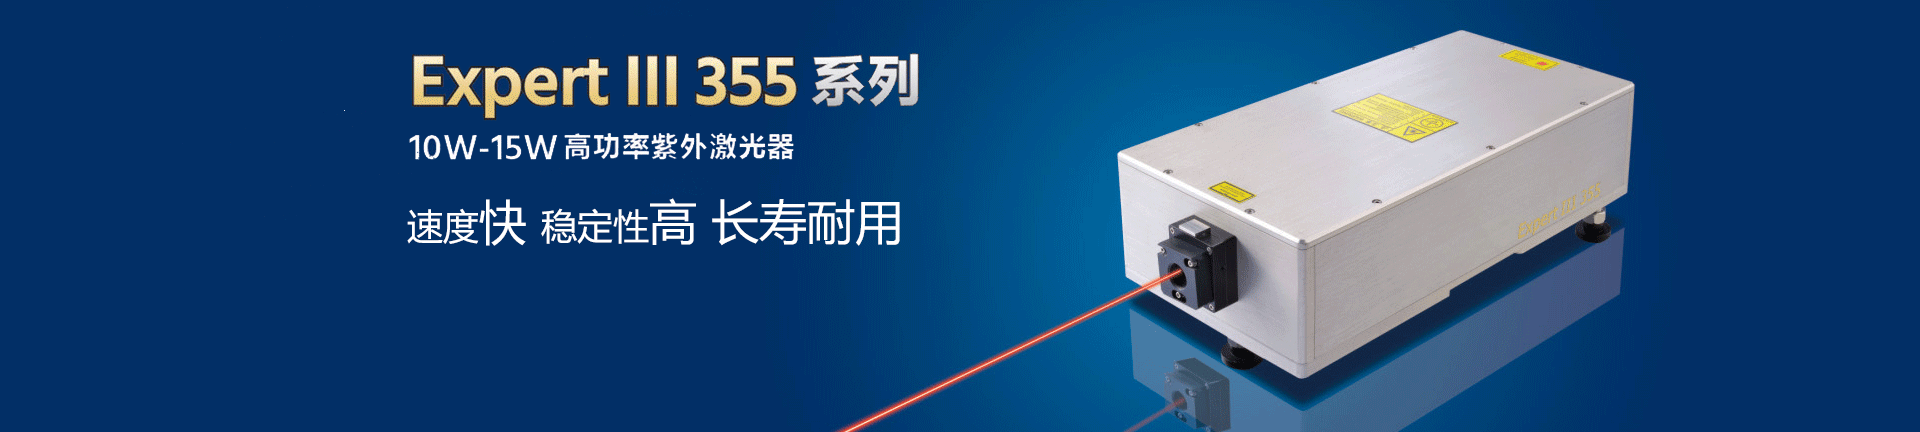 深圳瑞丰恒激光技术有限公司